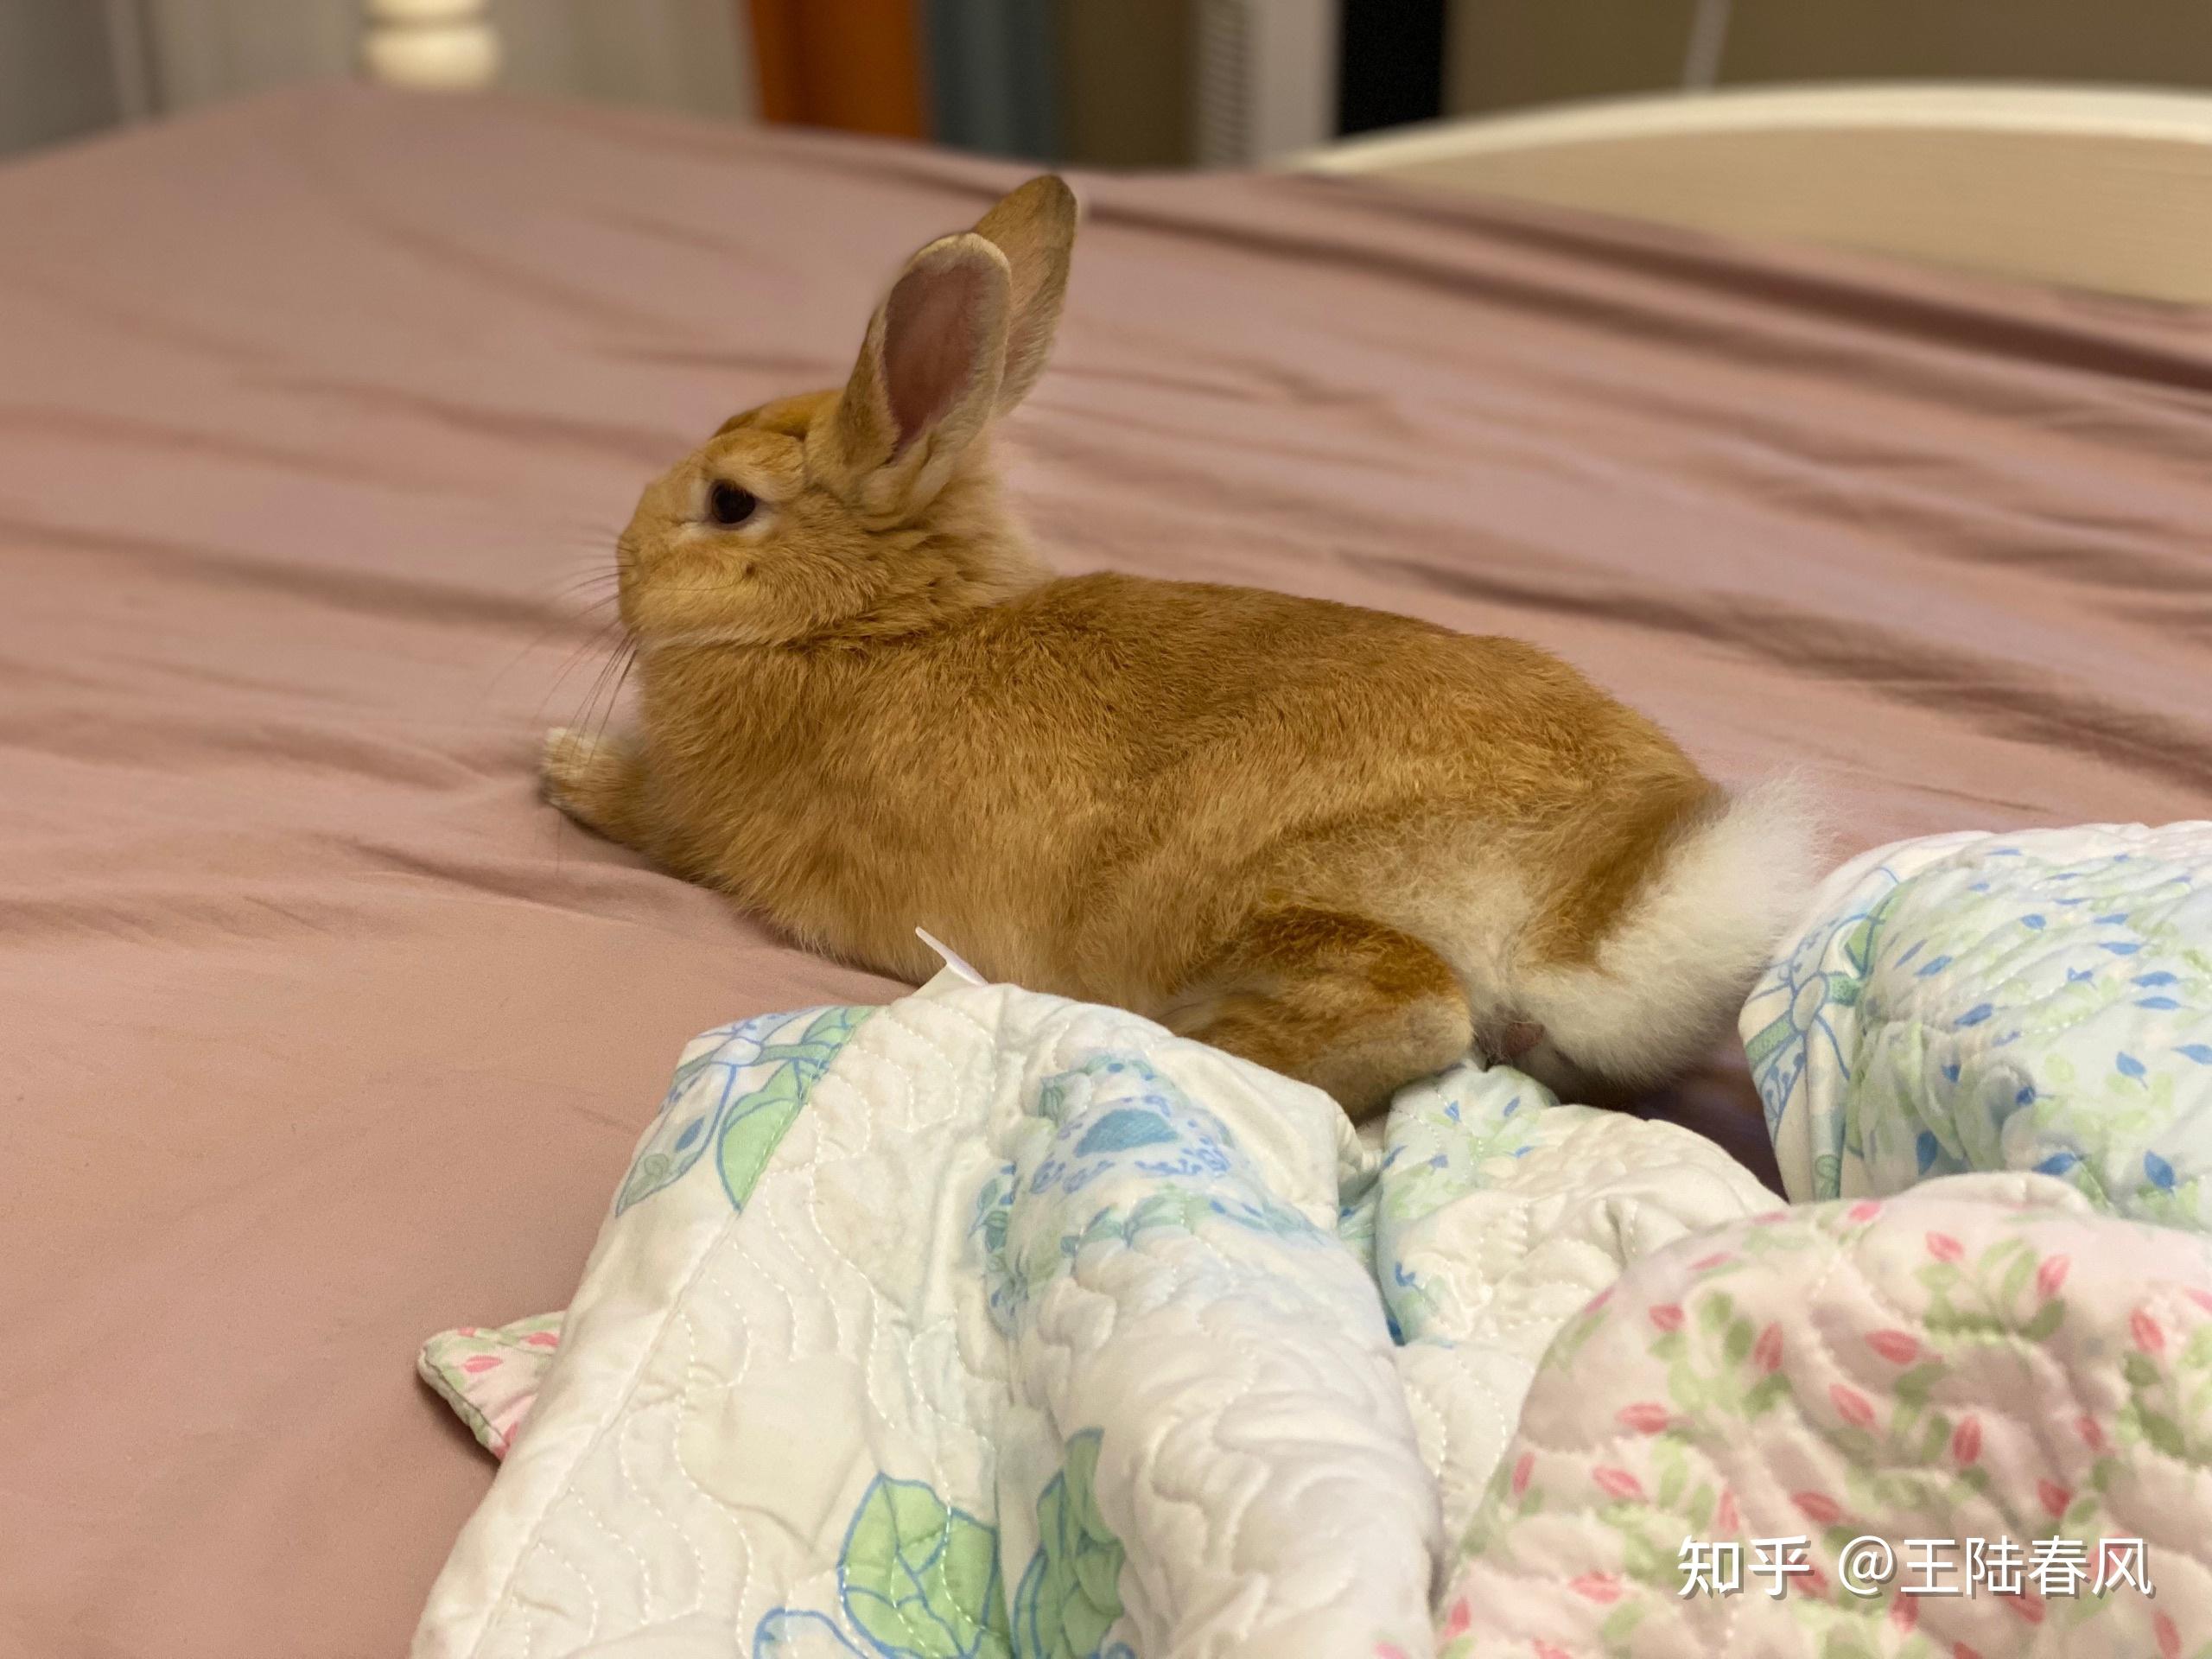 请问一下,兔兔睡觉的姿势是什么样子的? 